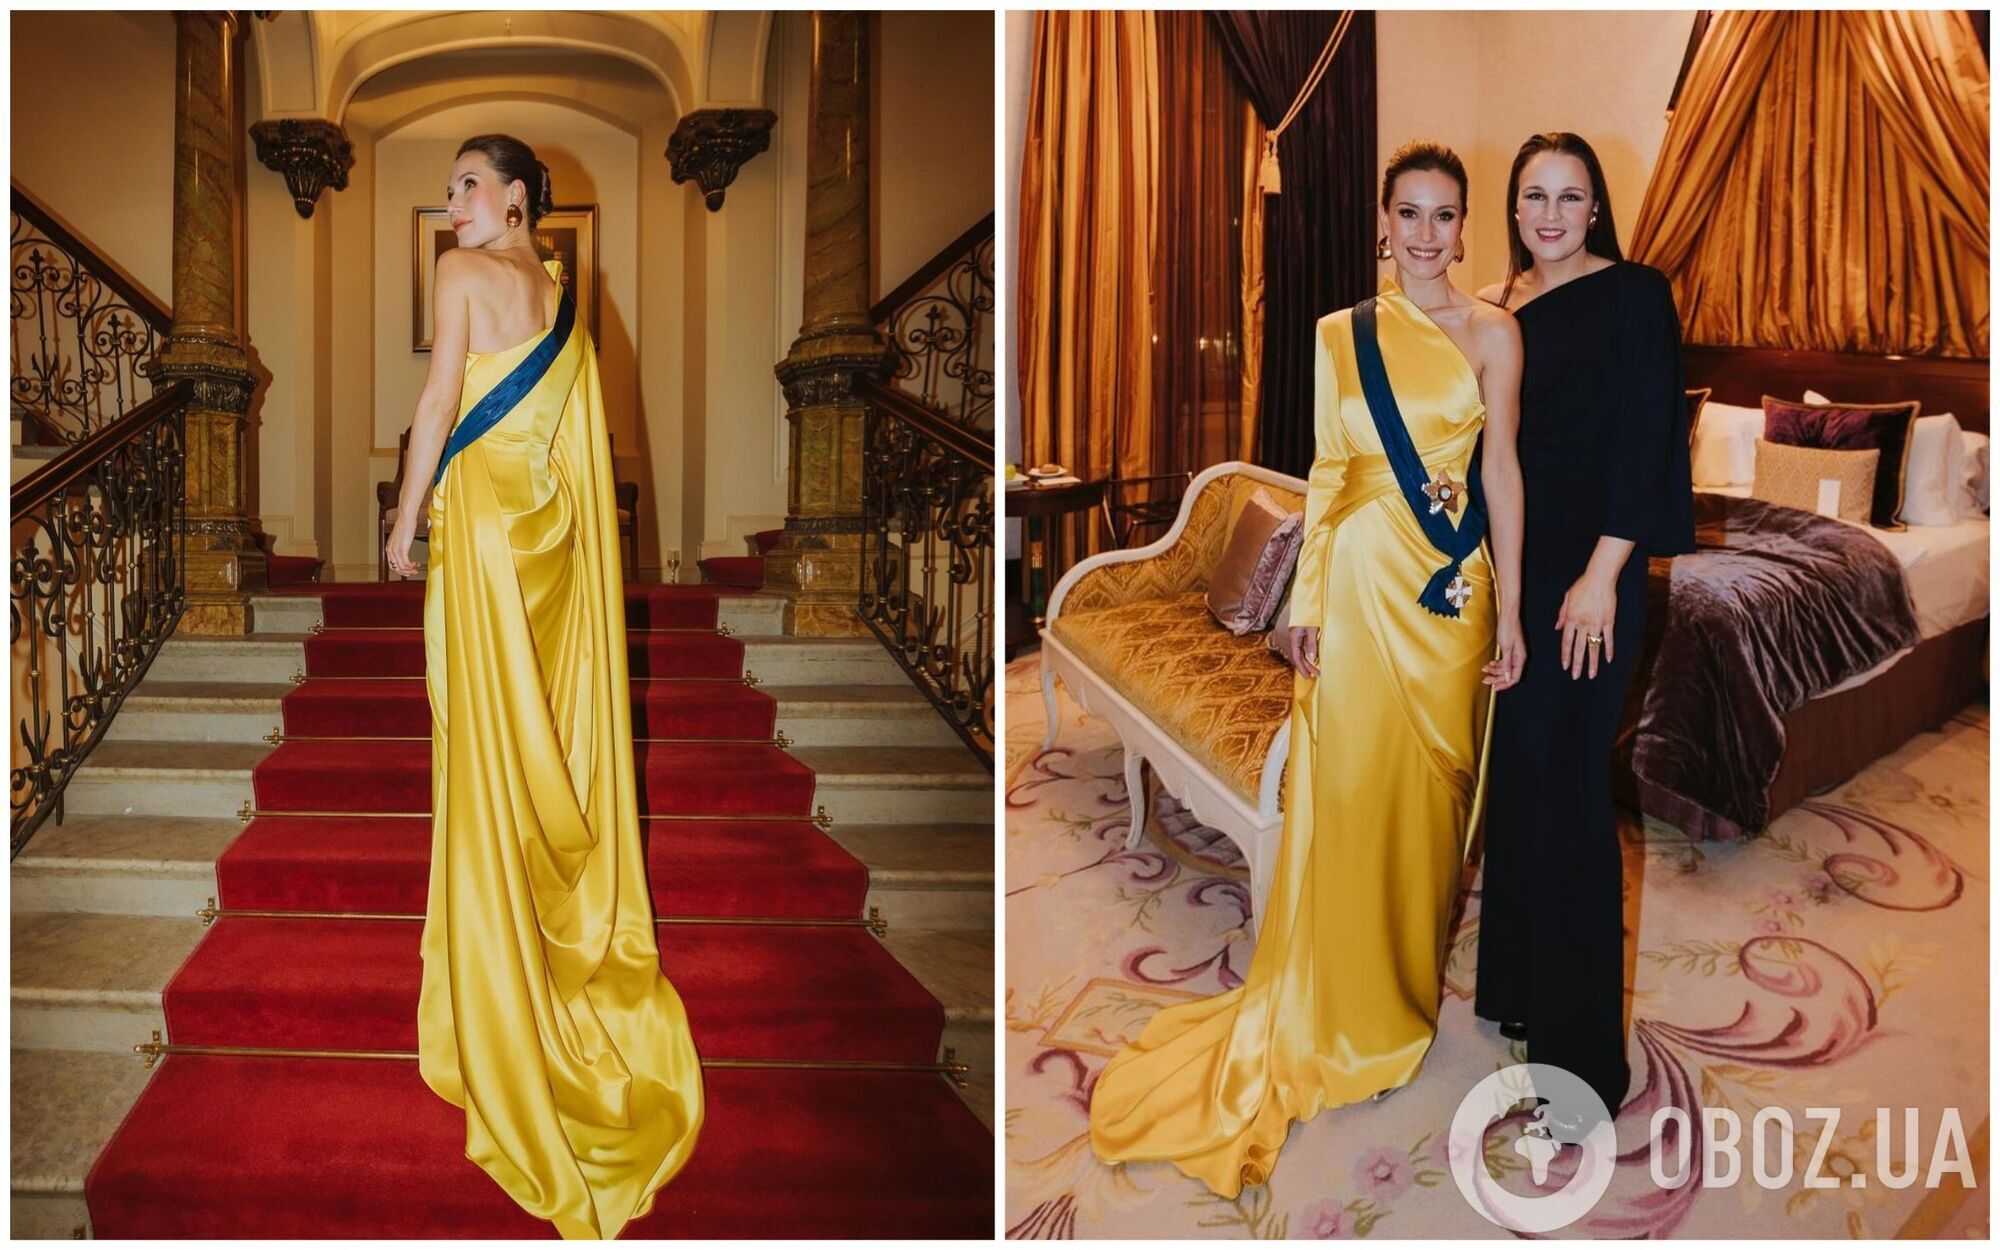 Экс-премьер Финляндии Санна Марин засветилась на публике в сине-желтом платье